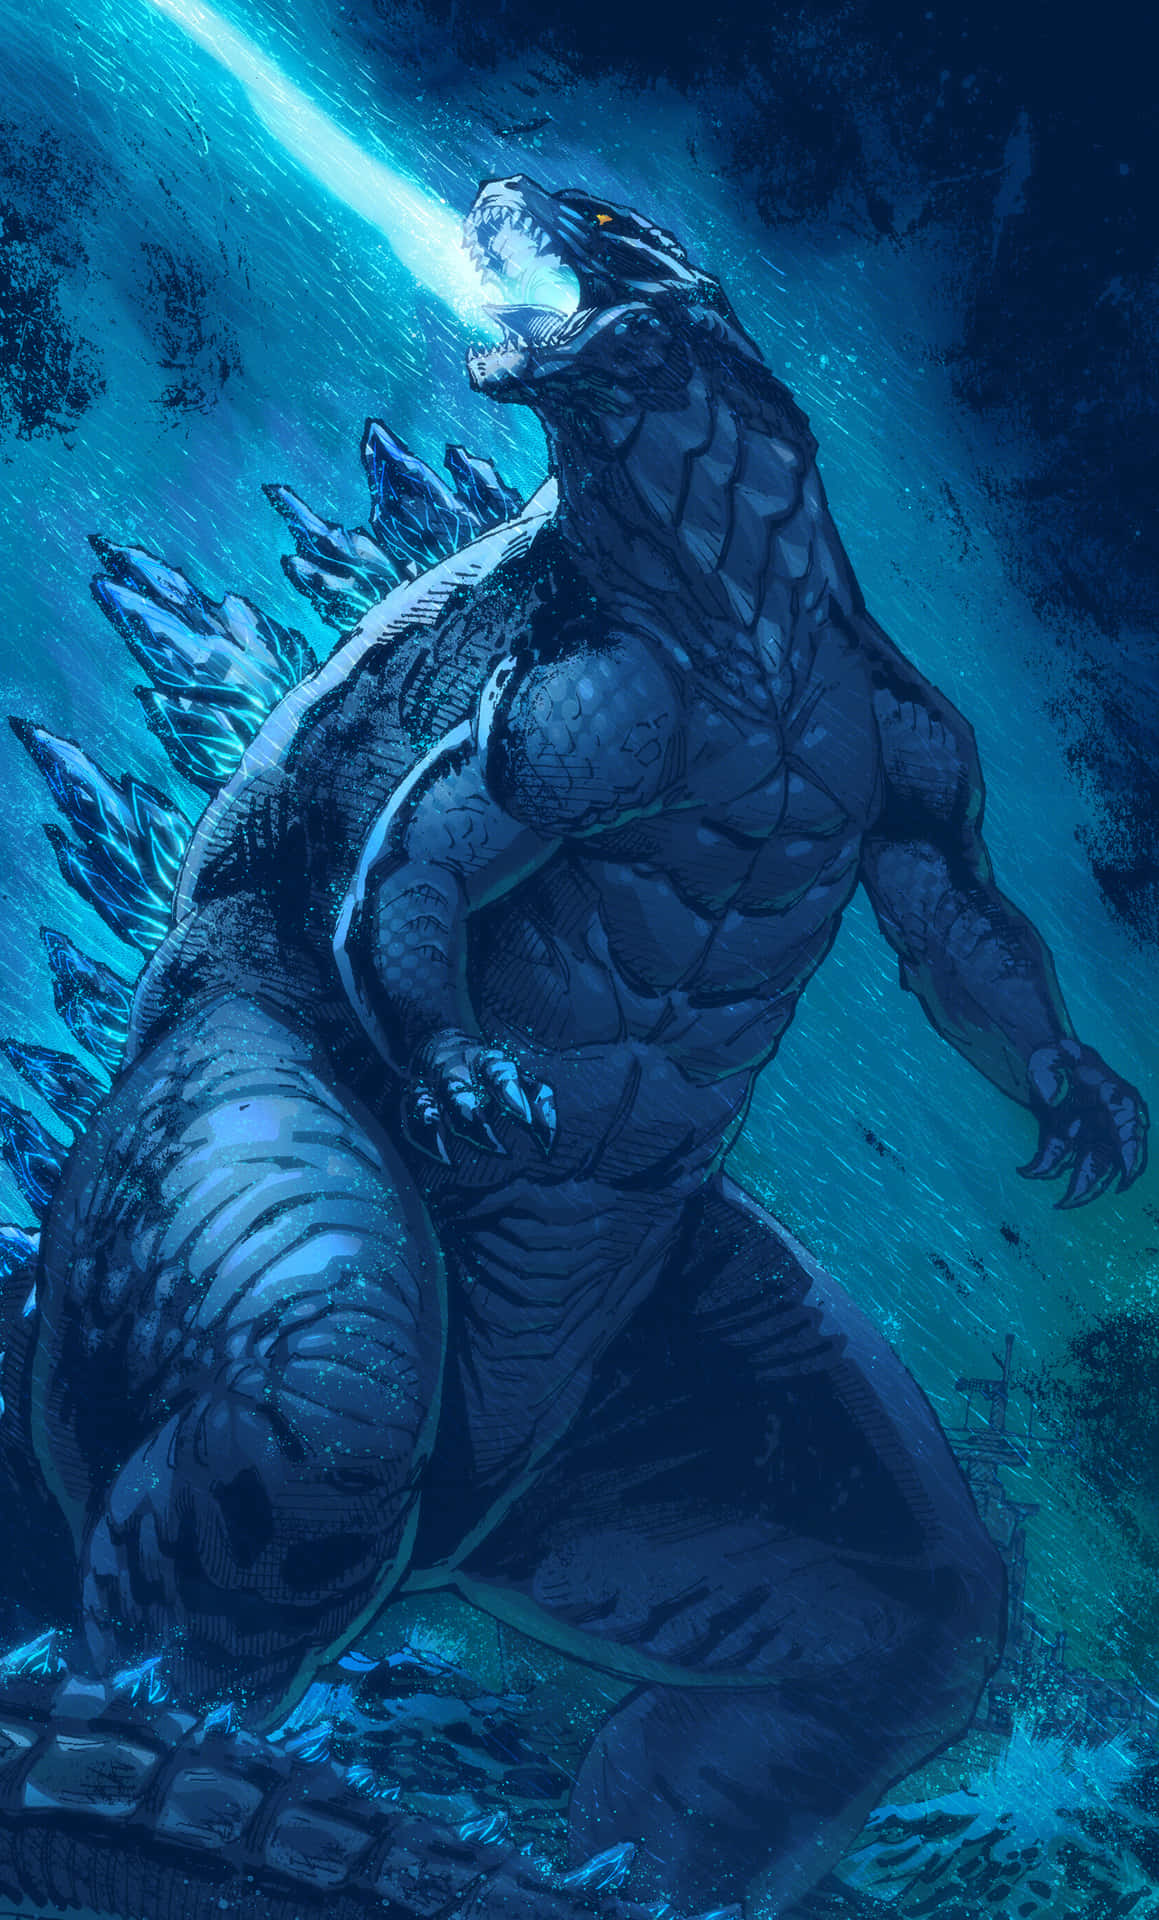 Imagende Arte De Godzilla Disparando Un Rayo Láser Azul.